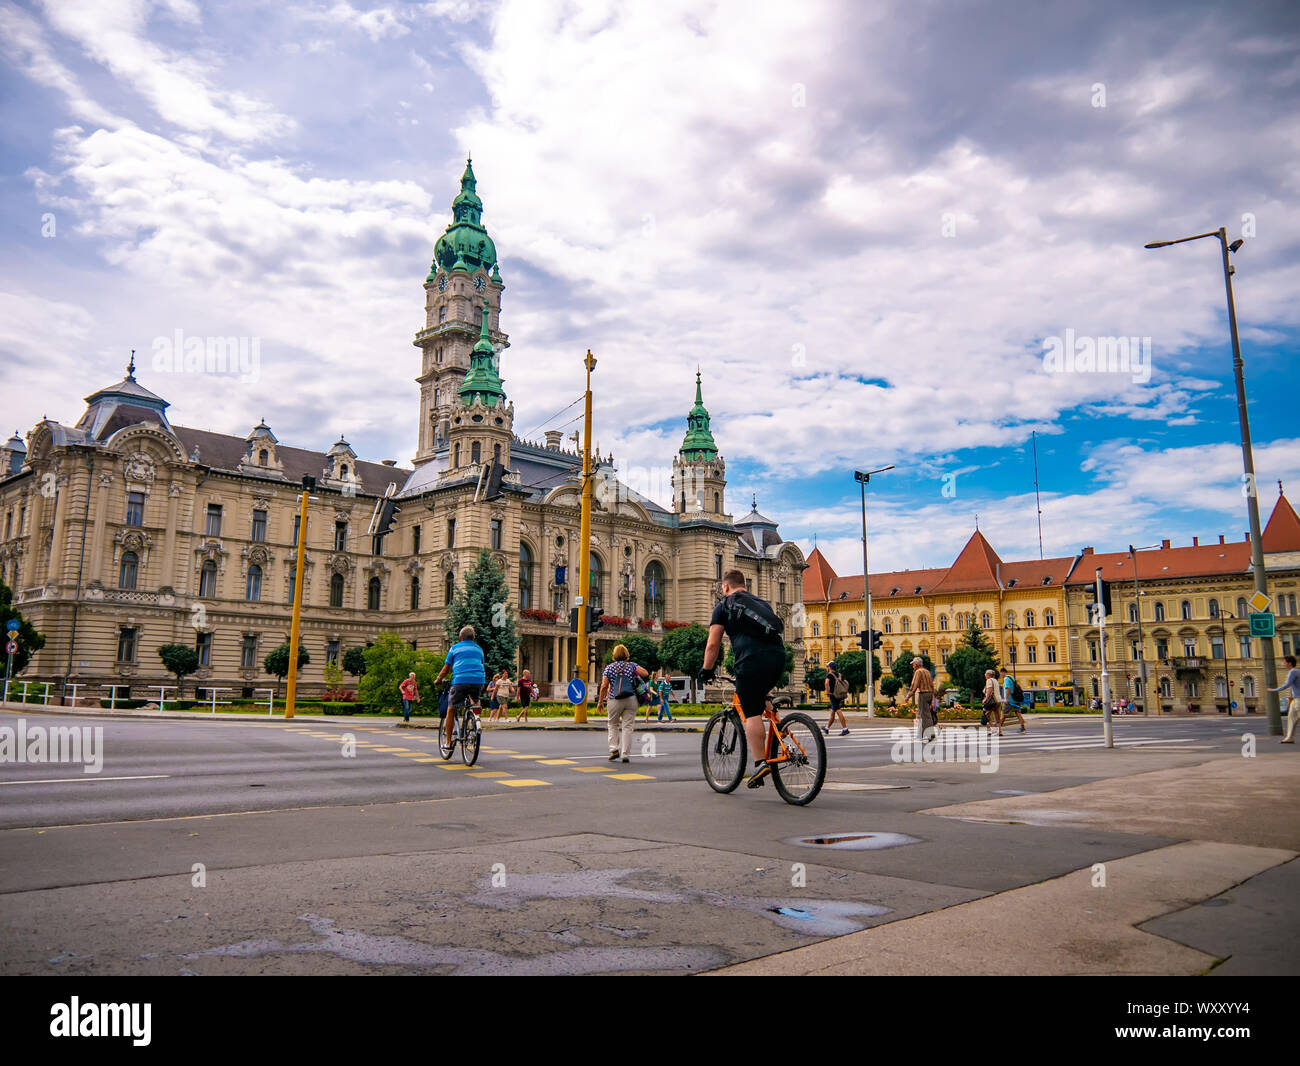 GYOR, HUNGRÍA - Agosto 06, 2019: Ver a la gente y los coches en frente de la oficina de alcaldes en Gyor, Hungría en un día soleado y cloud. Foto de stock